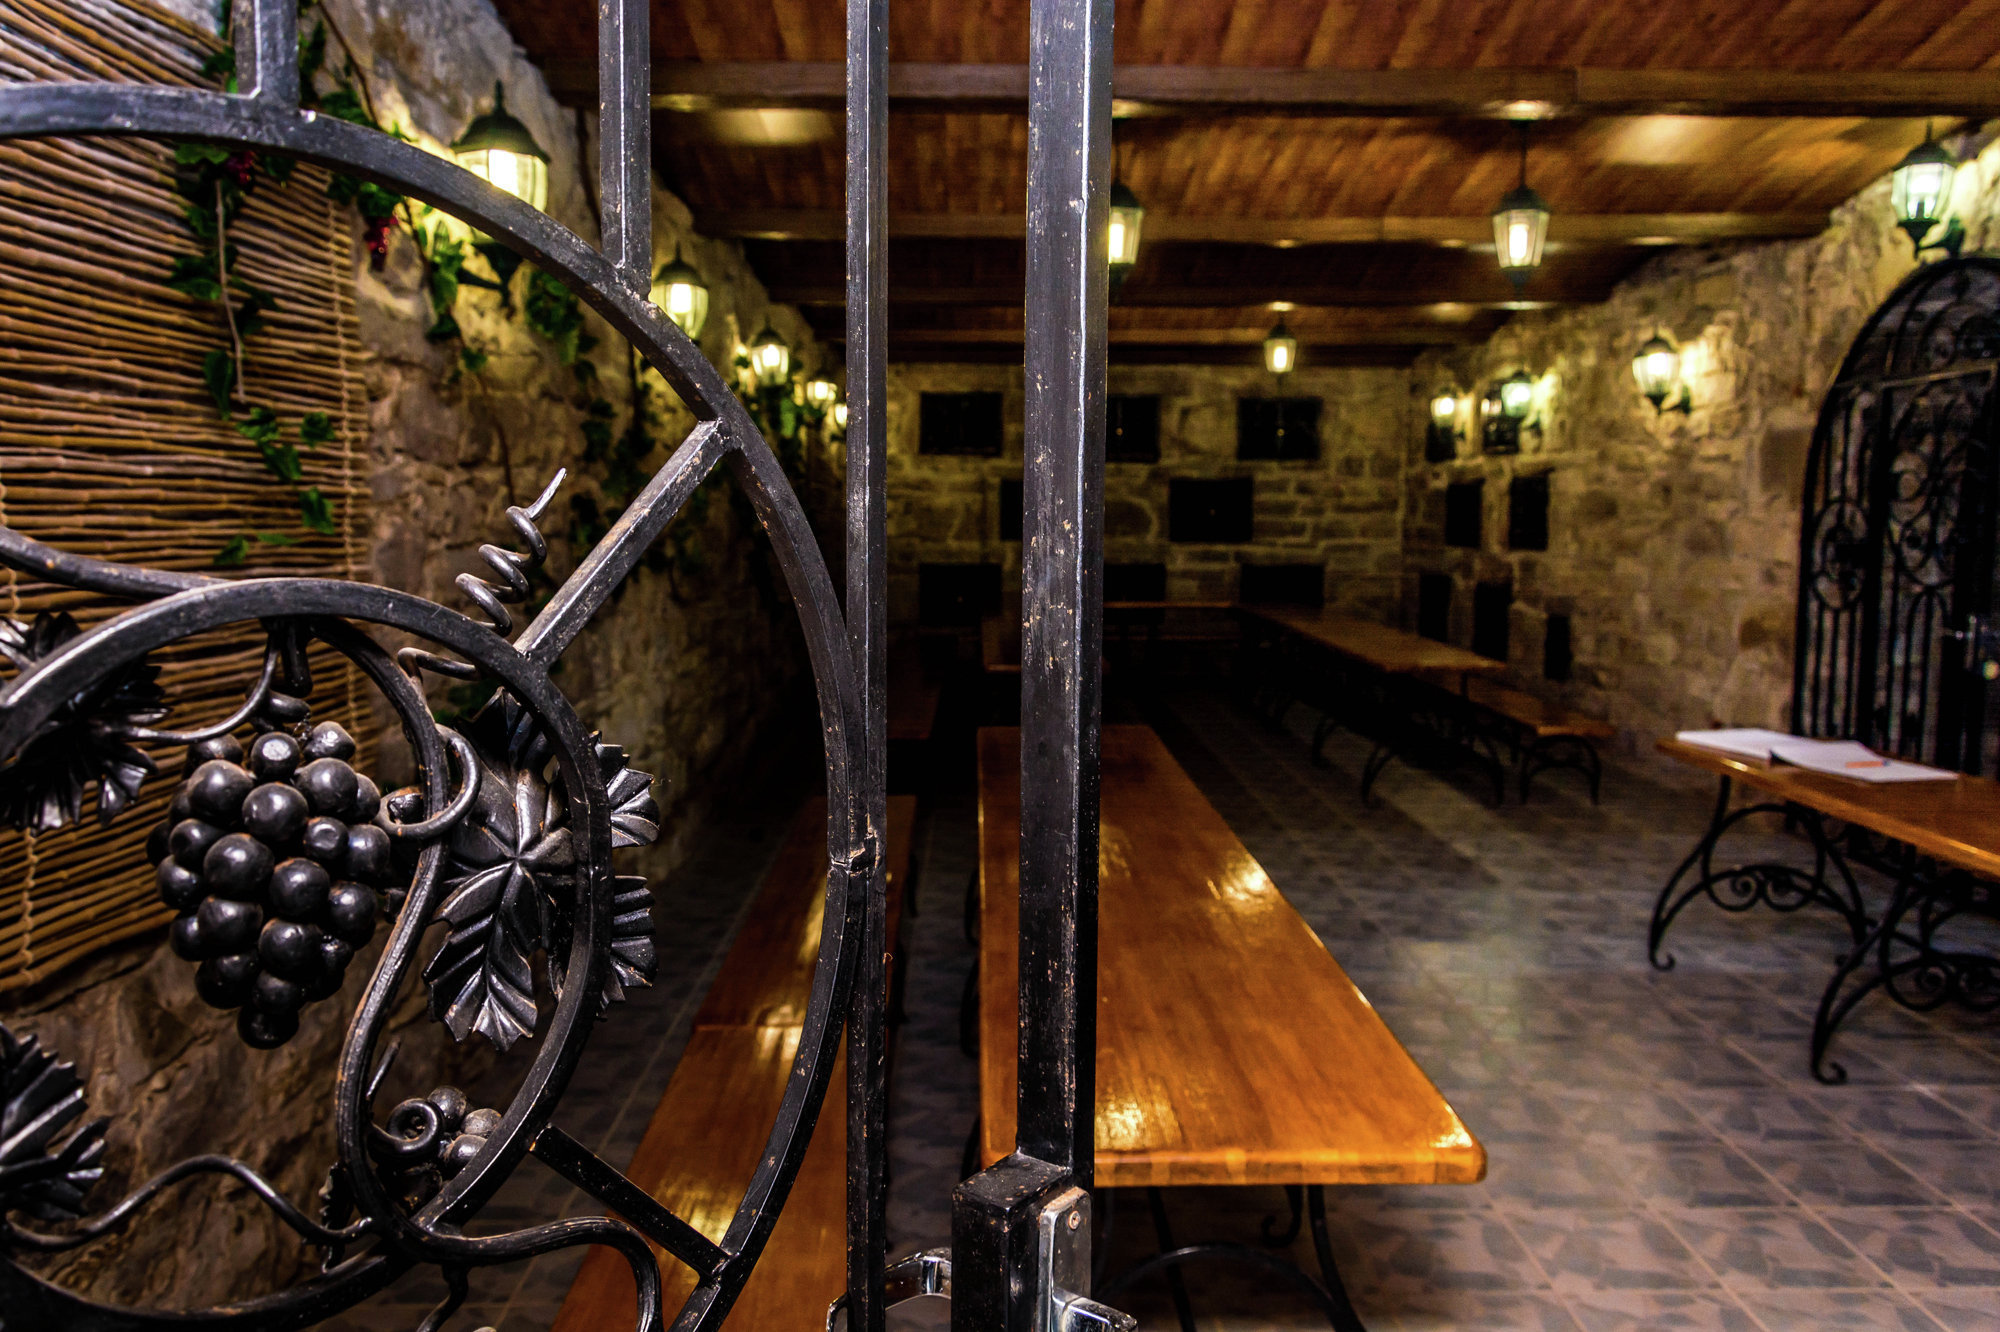 Tasting room of the Solnechnaya Dolina winery